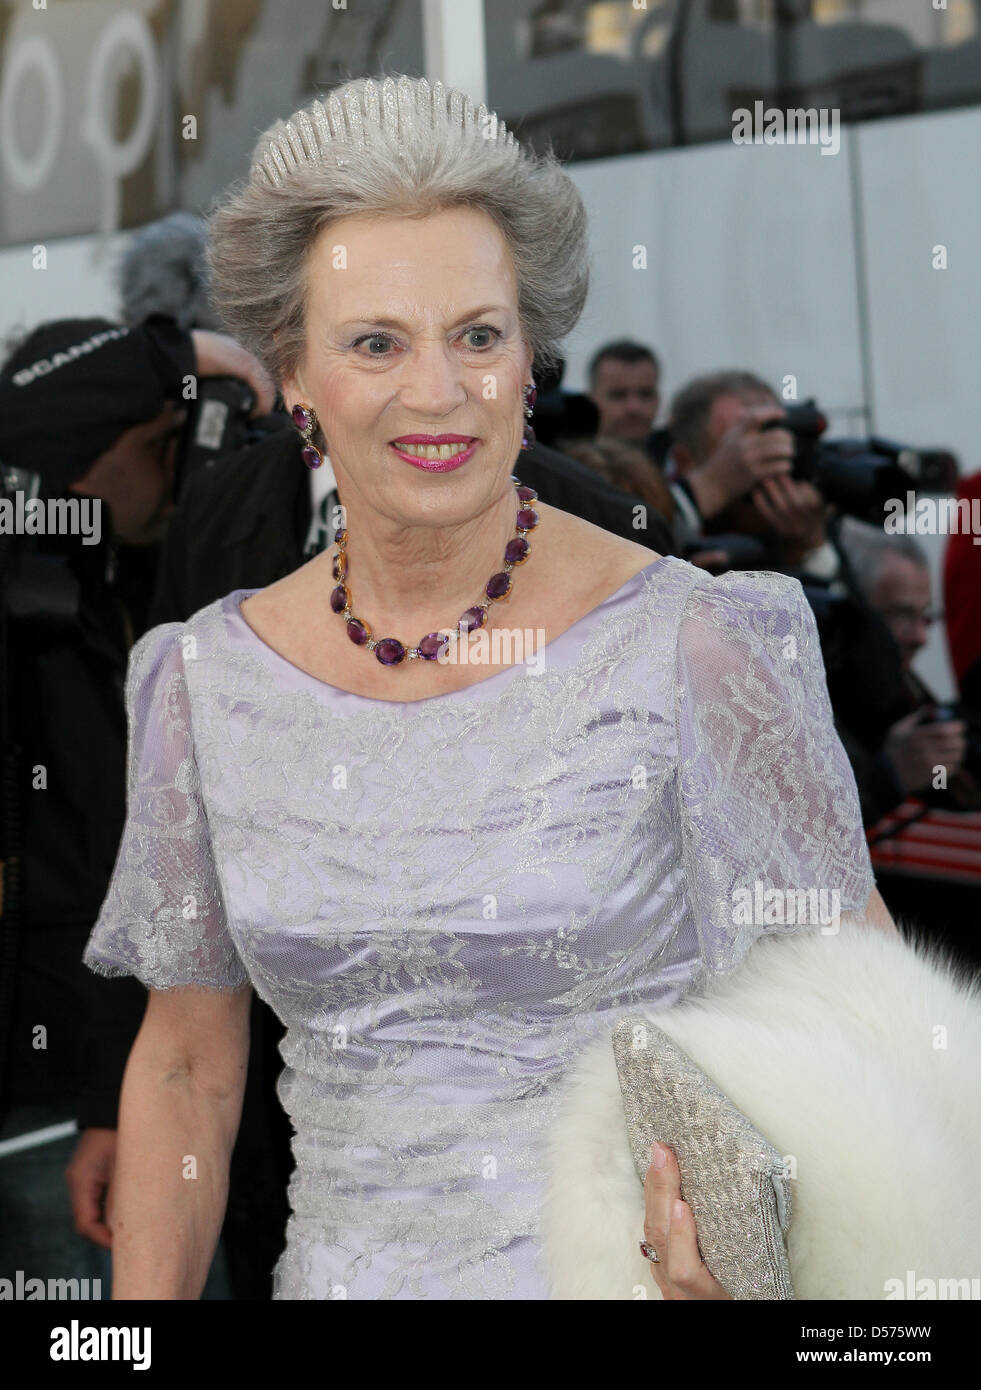 La Princesse Benedikte du Danemark arrive pour le dîner de gala à l'occasion de la célébration de la Reine Margrethe II de Danemark au 70e anniversaire du palais de Fredensborg, Danemark, 16 avril 2010. Photo : Patrick van Katwijk Banque D'Images